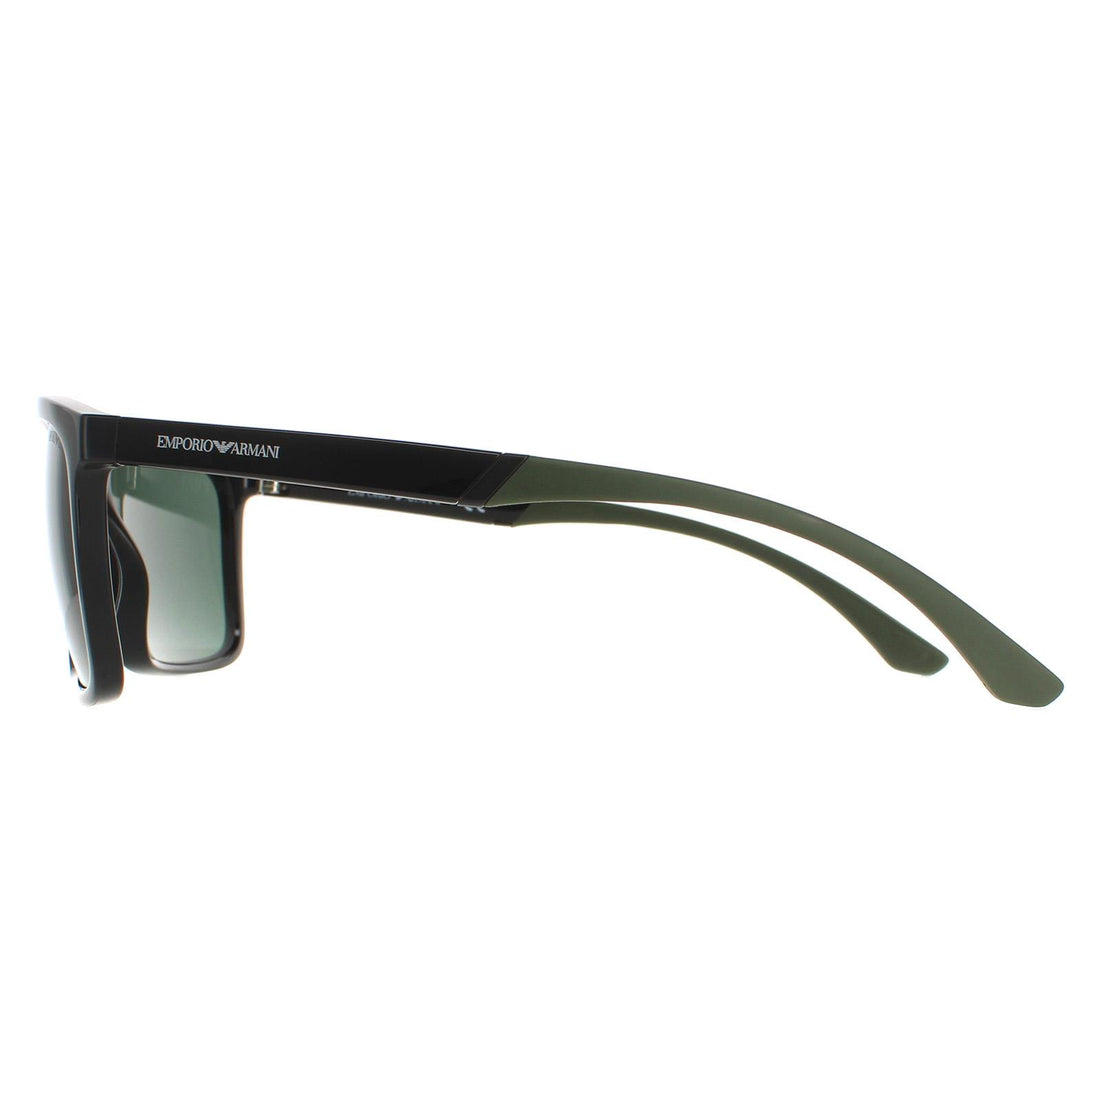 Emporio Armani Sunglasses EA4170 501771 Black Dark Green